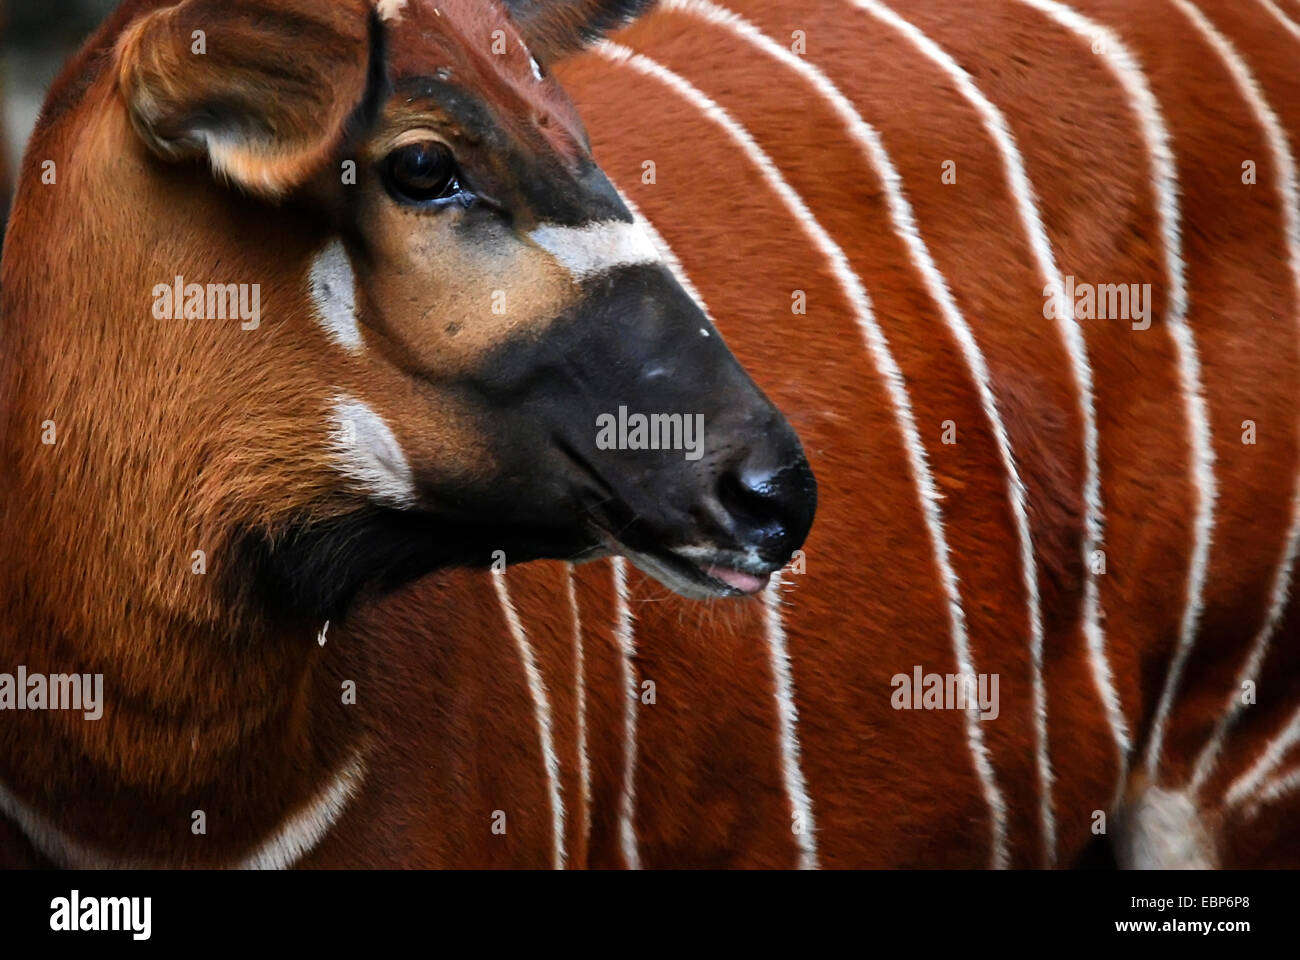 Bongo at a zoo in Frankfurt am Main, Germany. Stock Photo